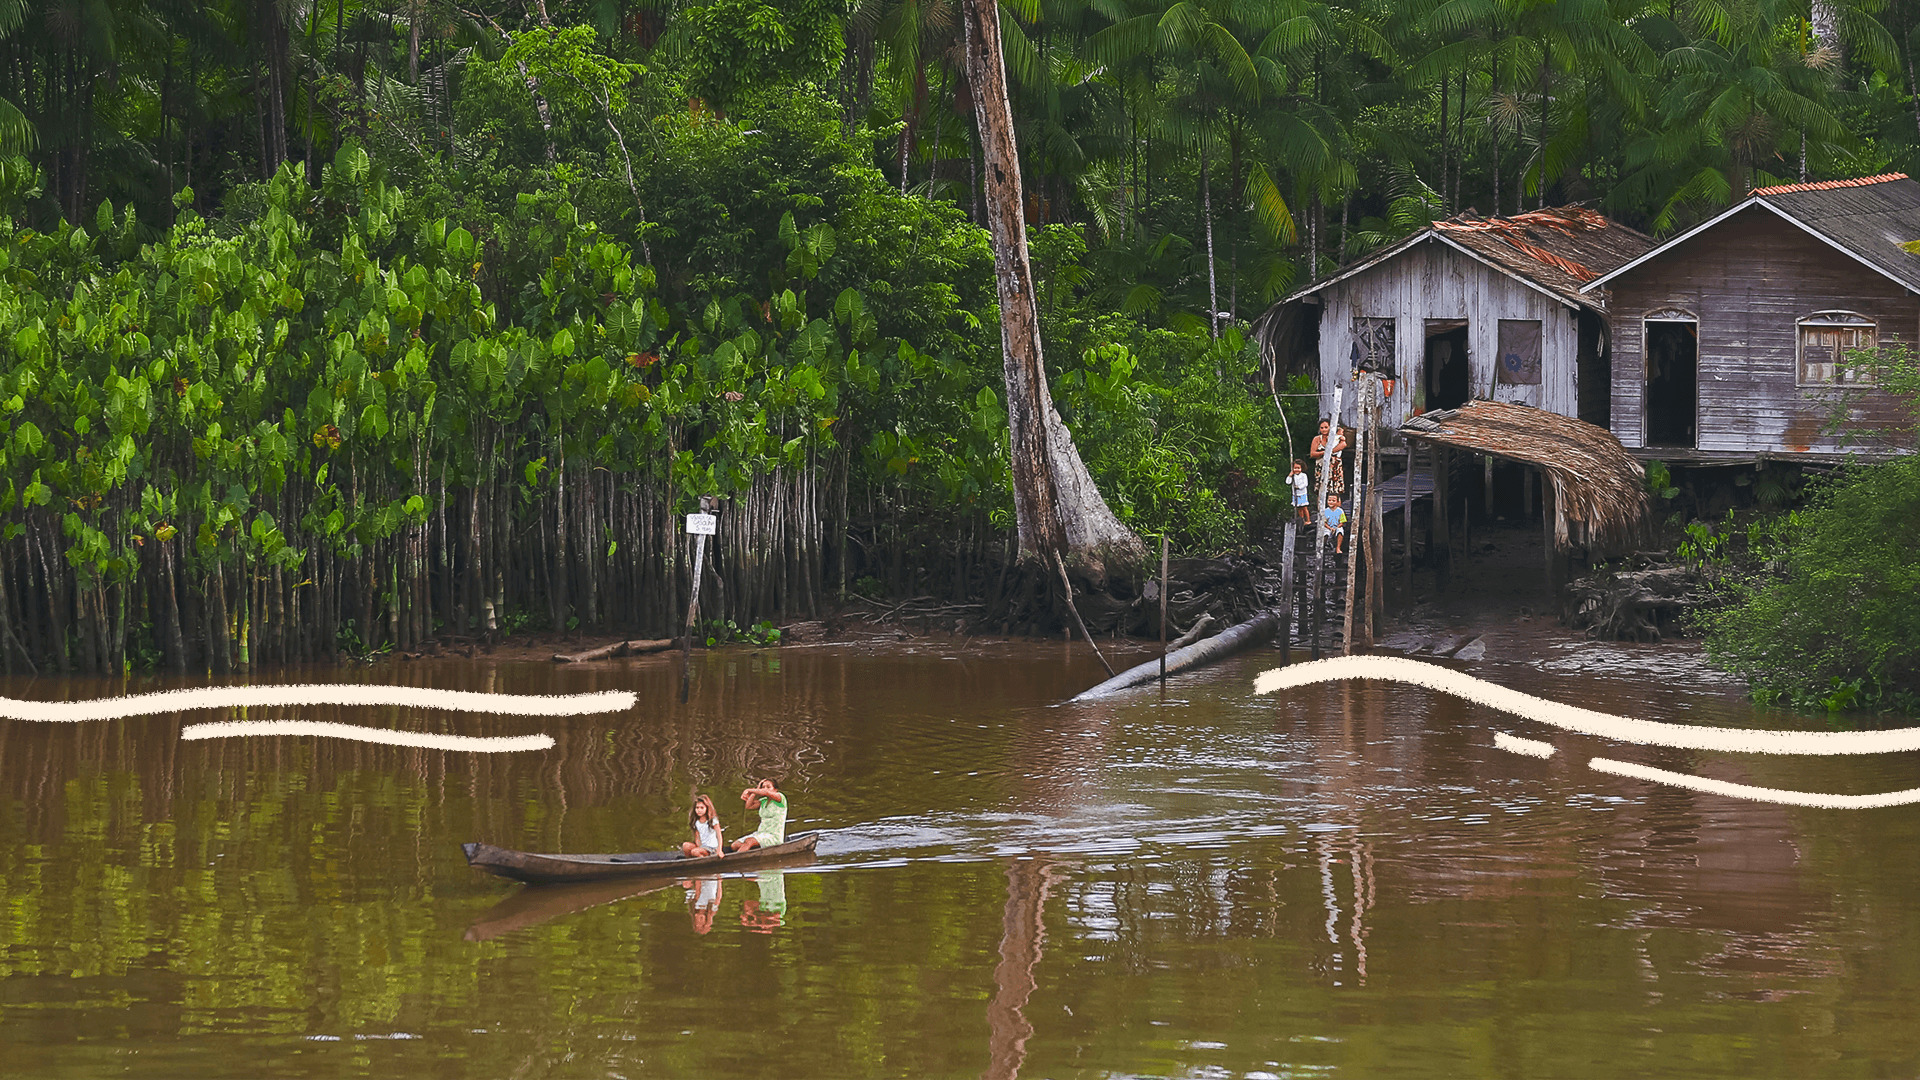 imagem ilustra matéria sobre os casos de exploração sexual no marajó e mostra uma paisagem ribeirinha, com crianças em uma canoa no meio de um rio e uma casa de madeira ao fundo.